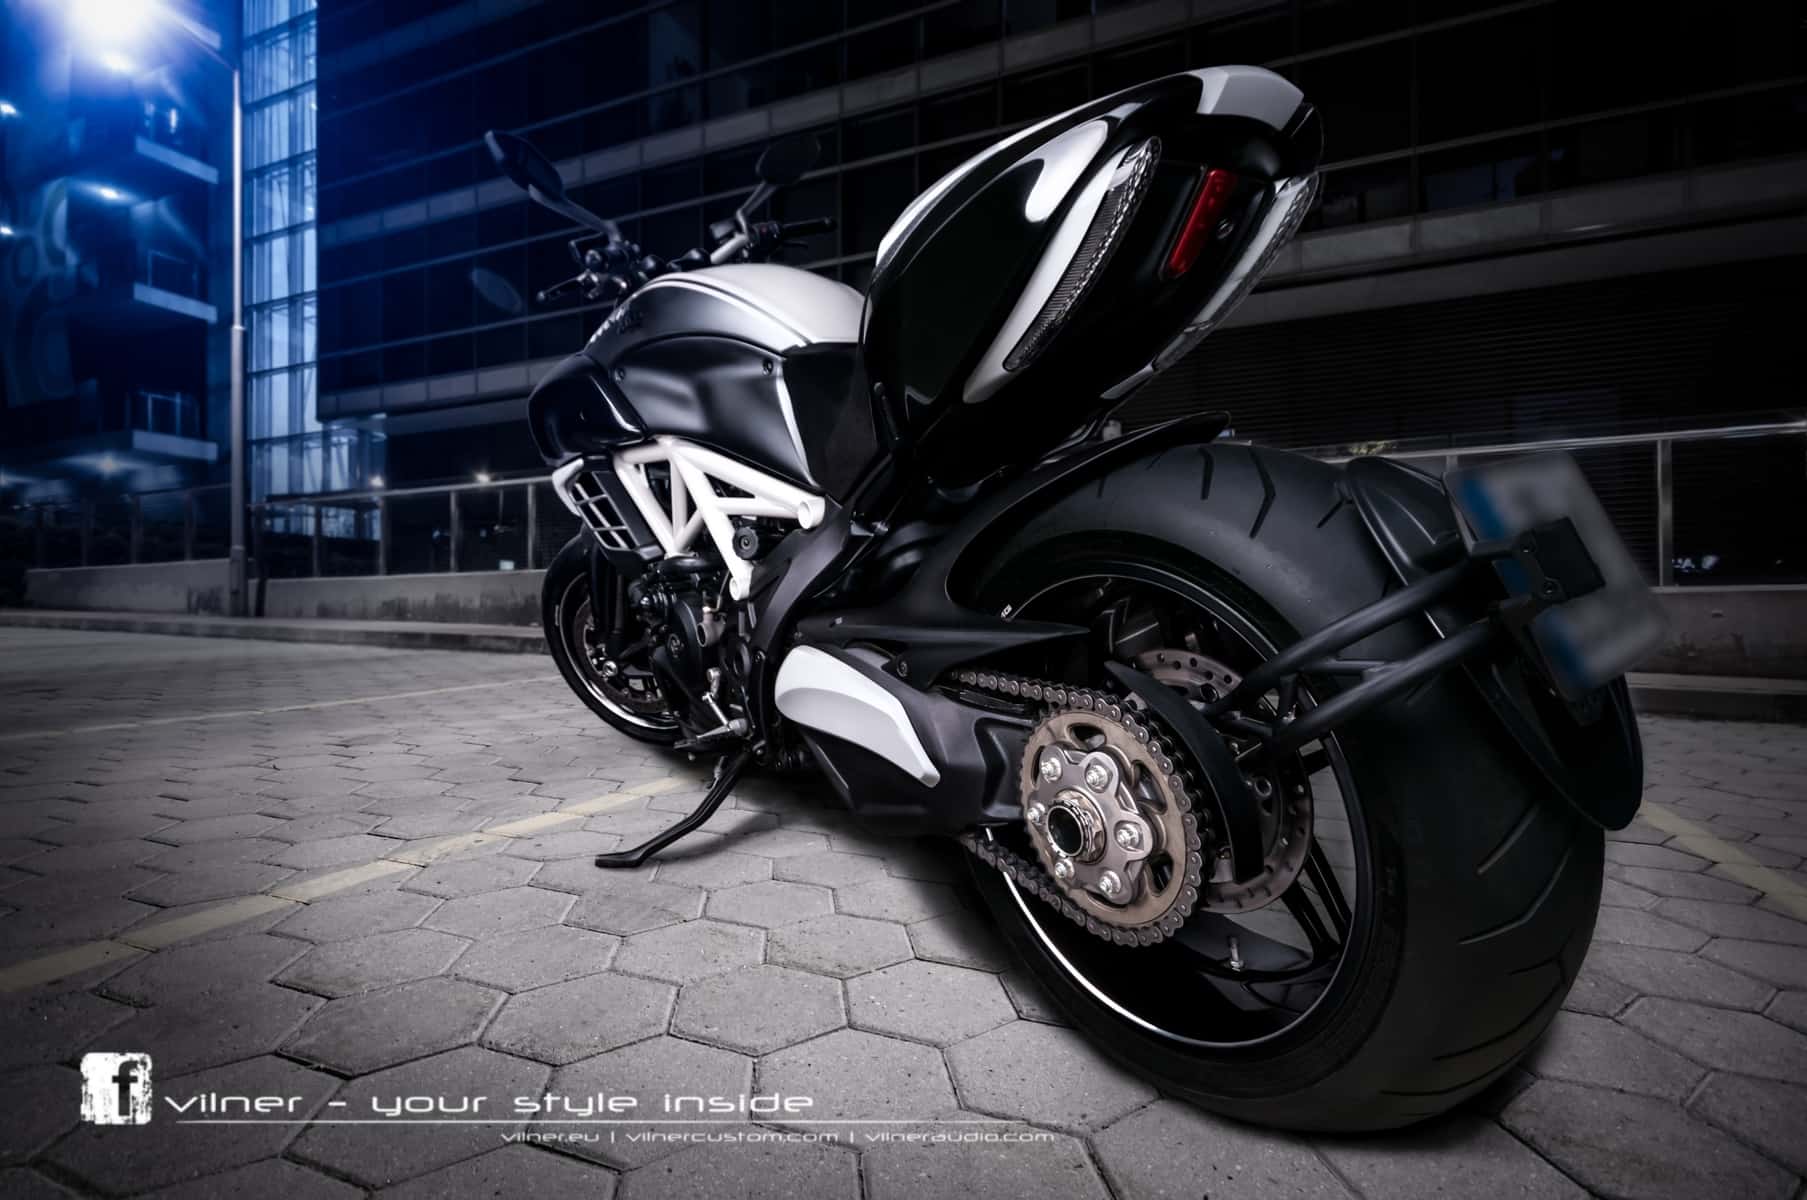 Ducati Diavel AMG by Vilner 2